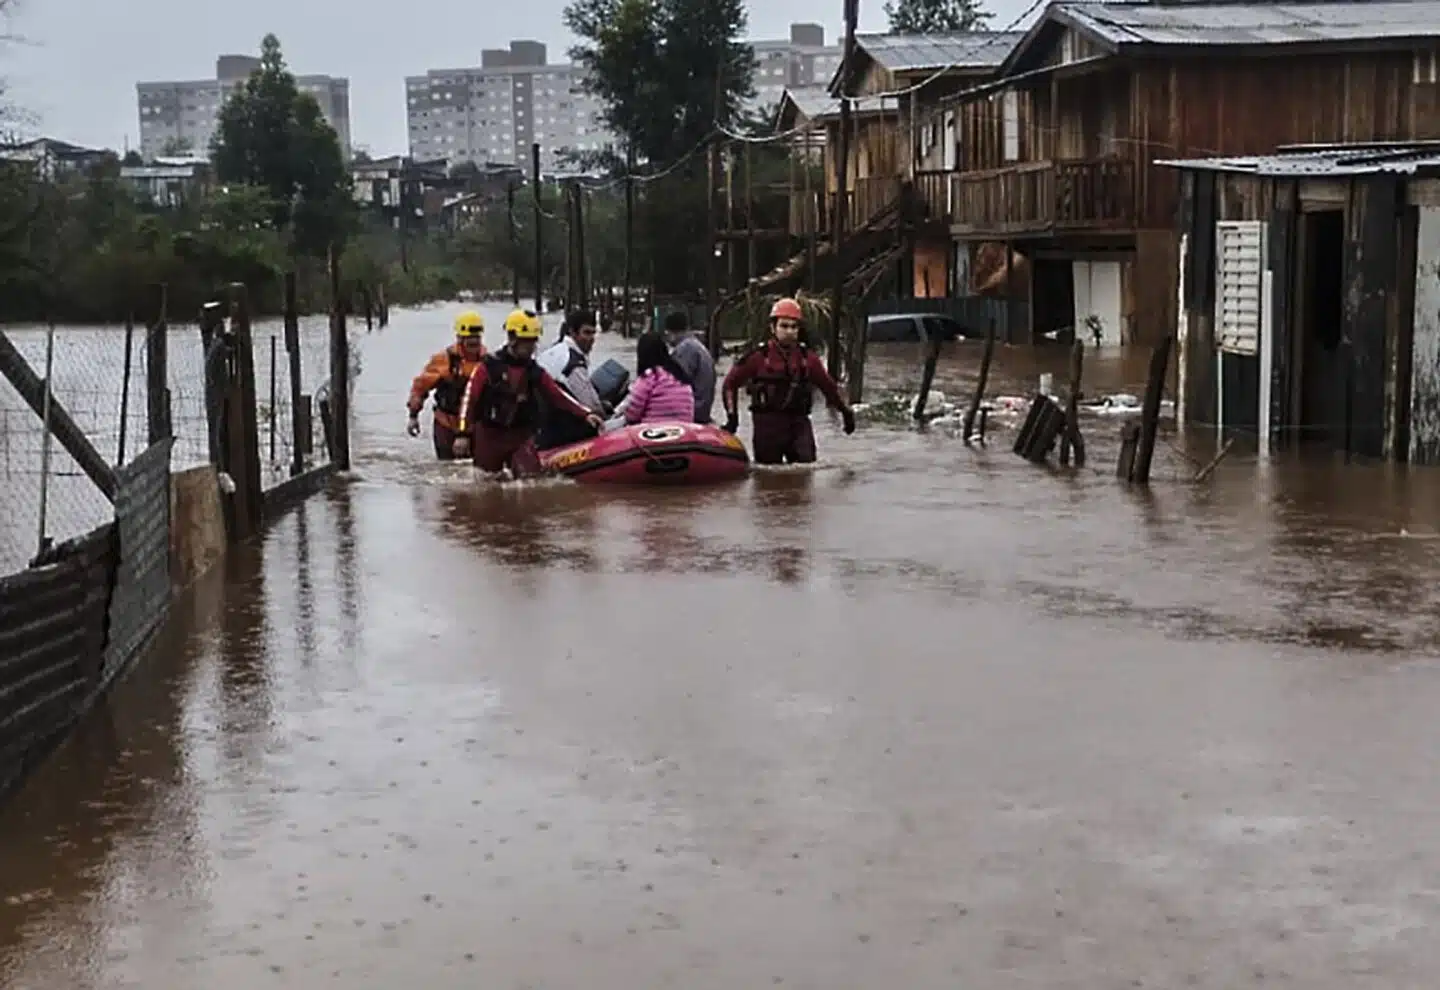 Reportan más de 20 personas sin vida tras paso de ciclón en Brasil